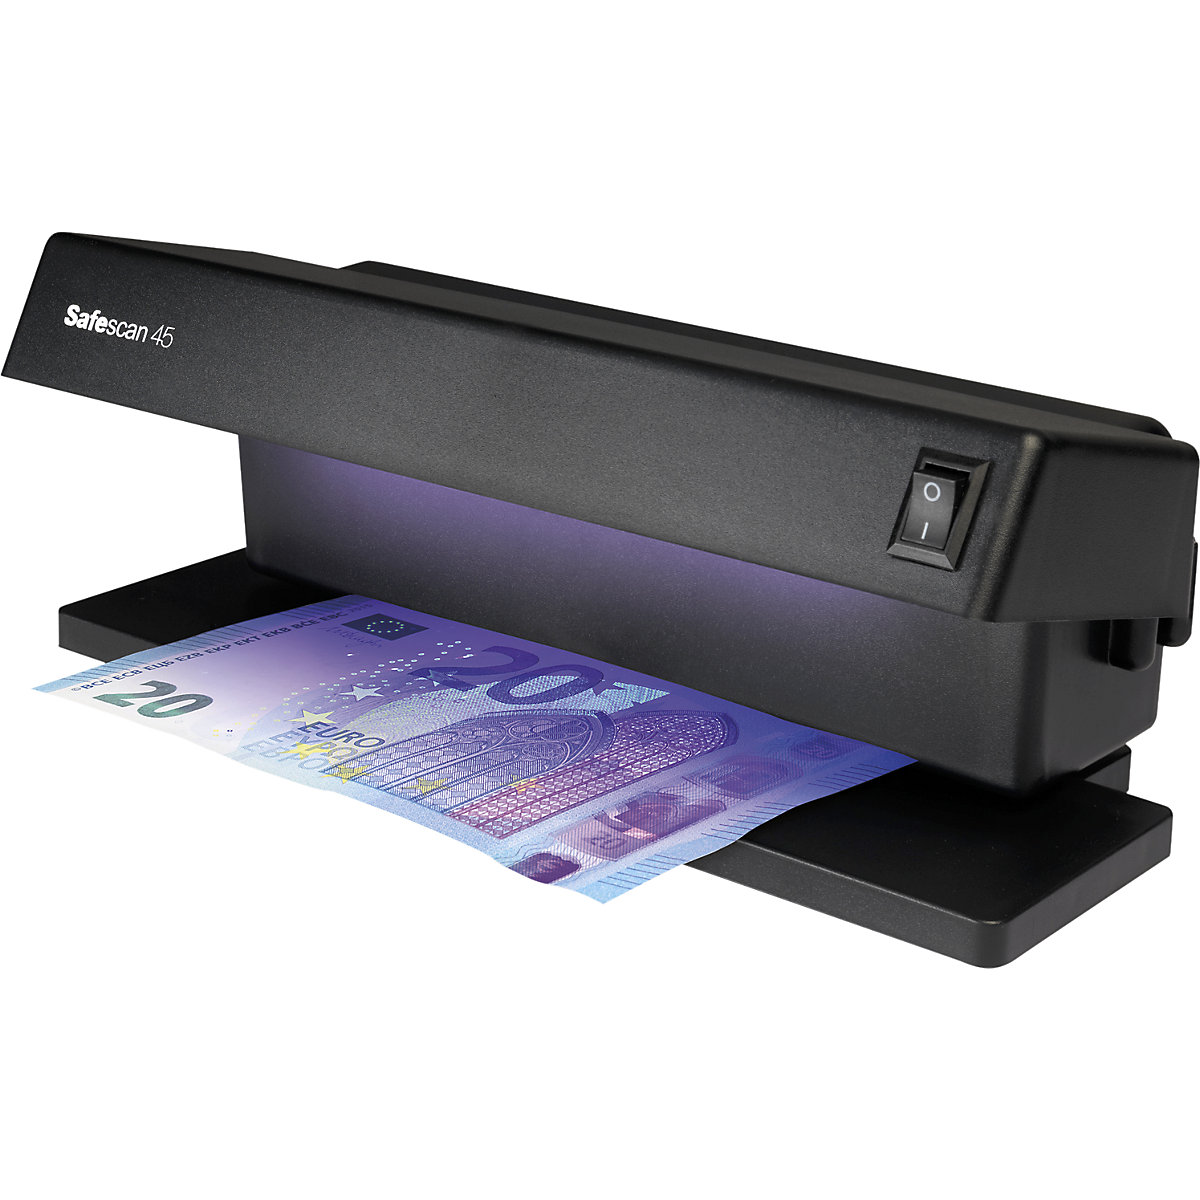 Detector de billetes falsos – Safescan